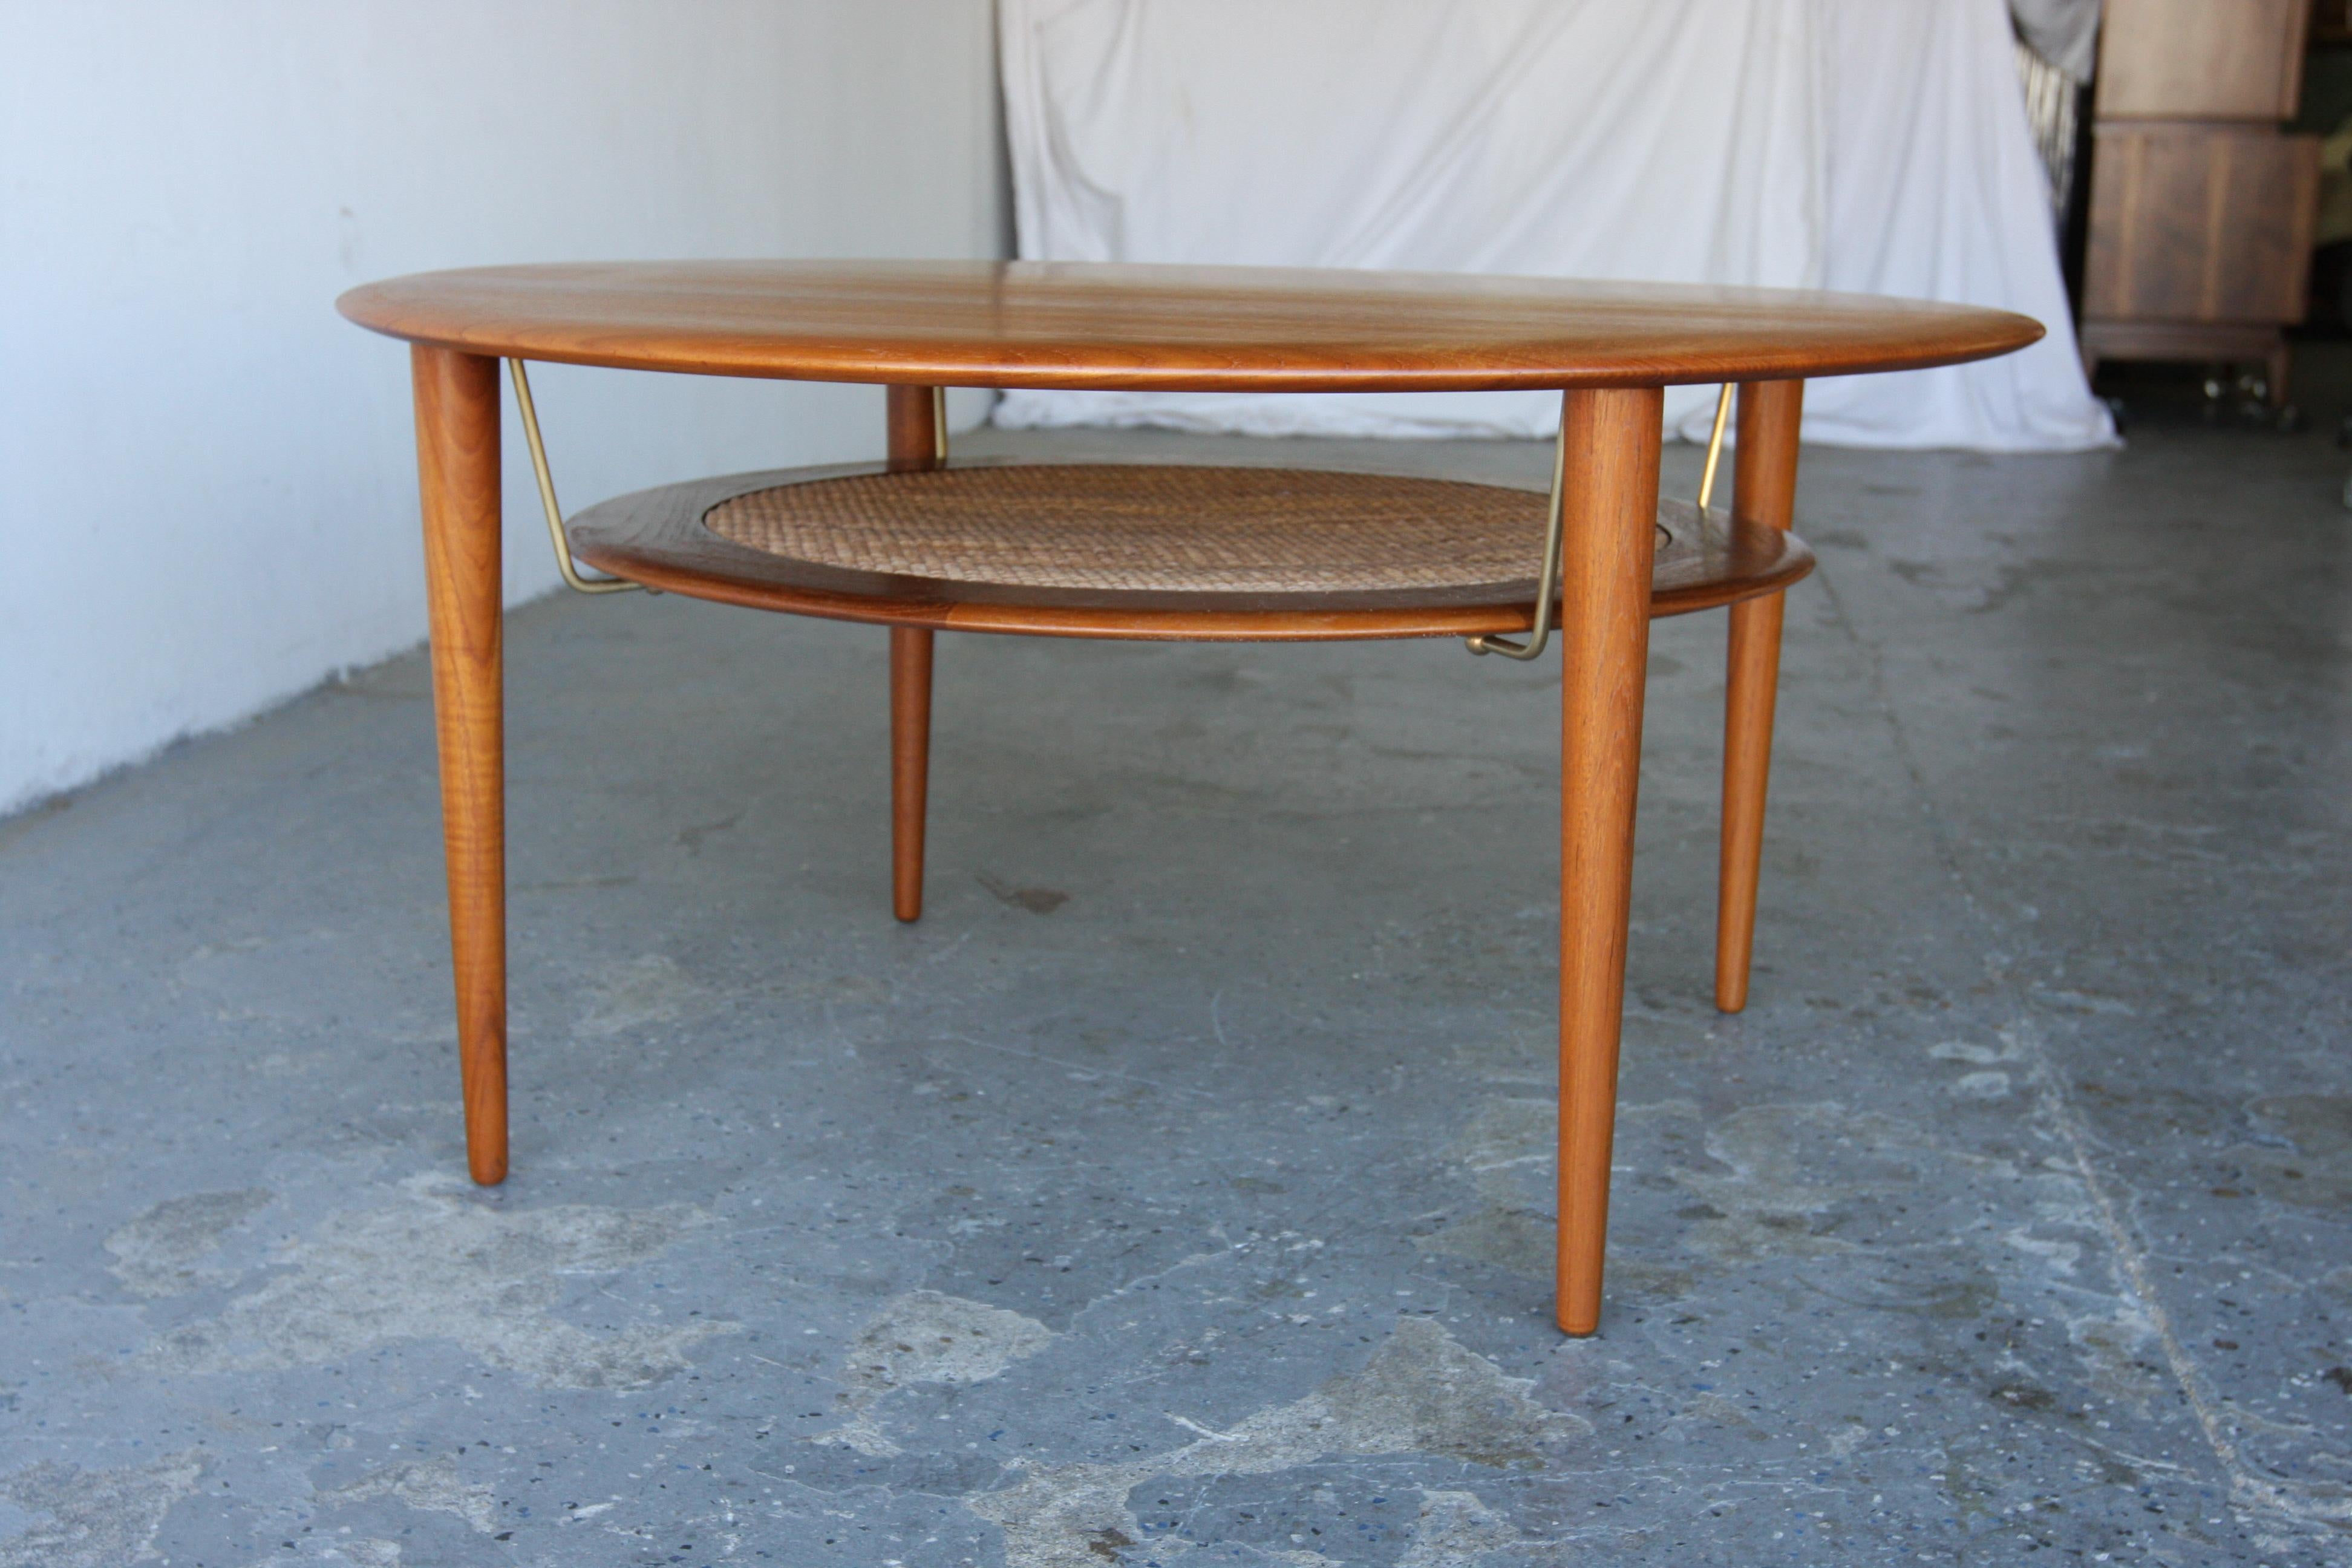 Magnifique table basse ronde conçue par Peter Hvidt & Orla Molgaard Nielsen et fabriquée par France & Son, Danemark années 1960. La table est en teck massif (ce qui est assez rare, la plupart des tables basses sont plaquées).

Table basse moderne